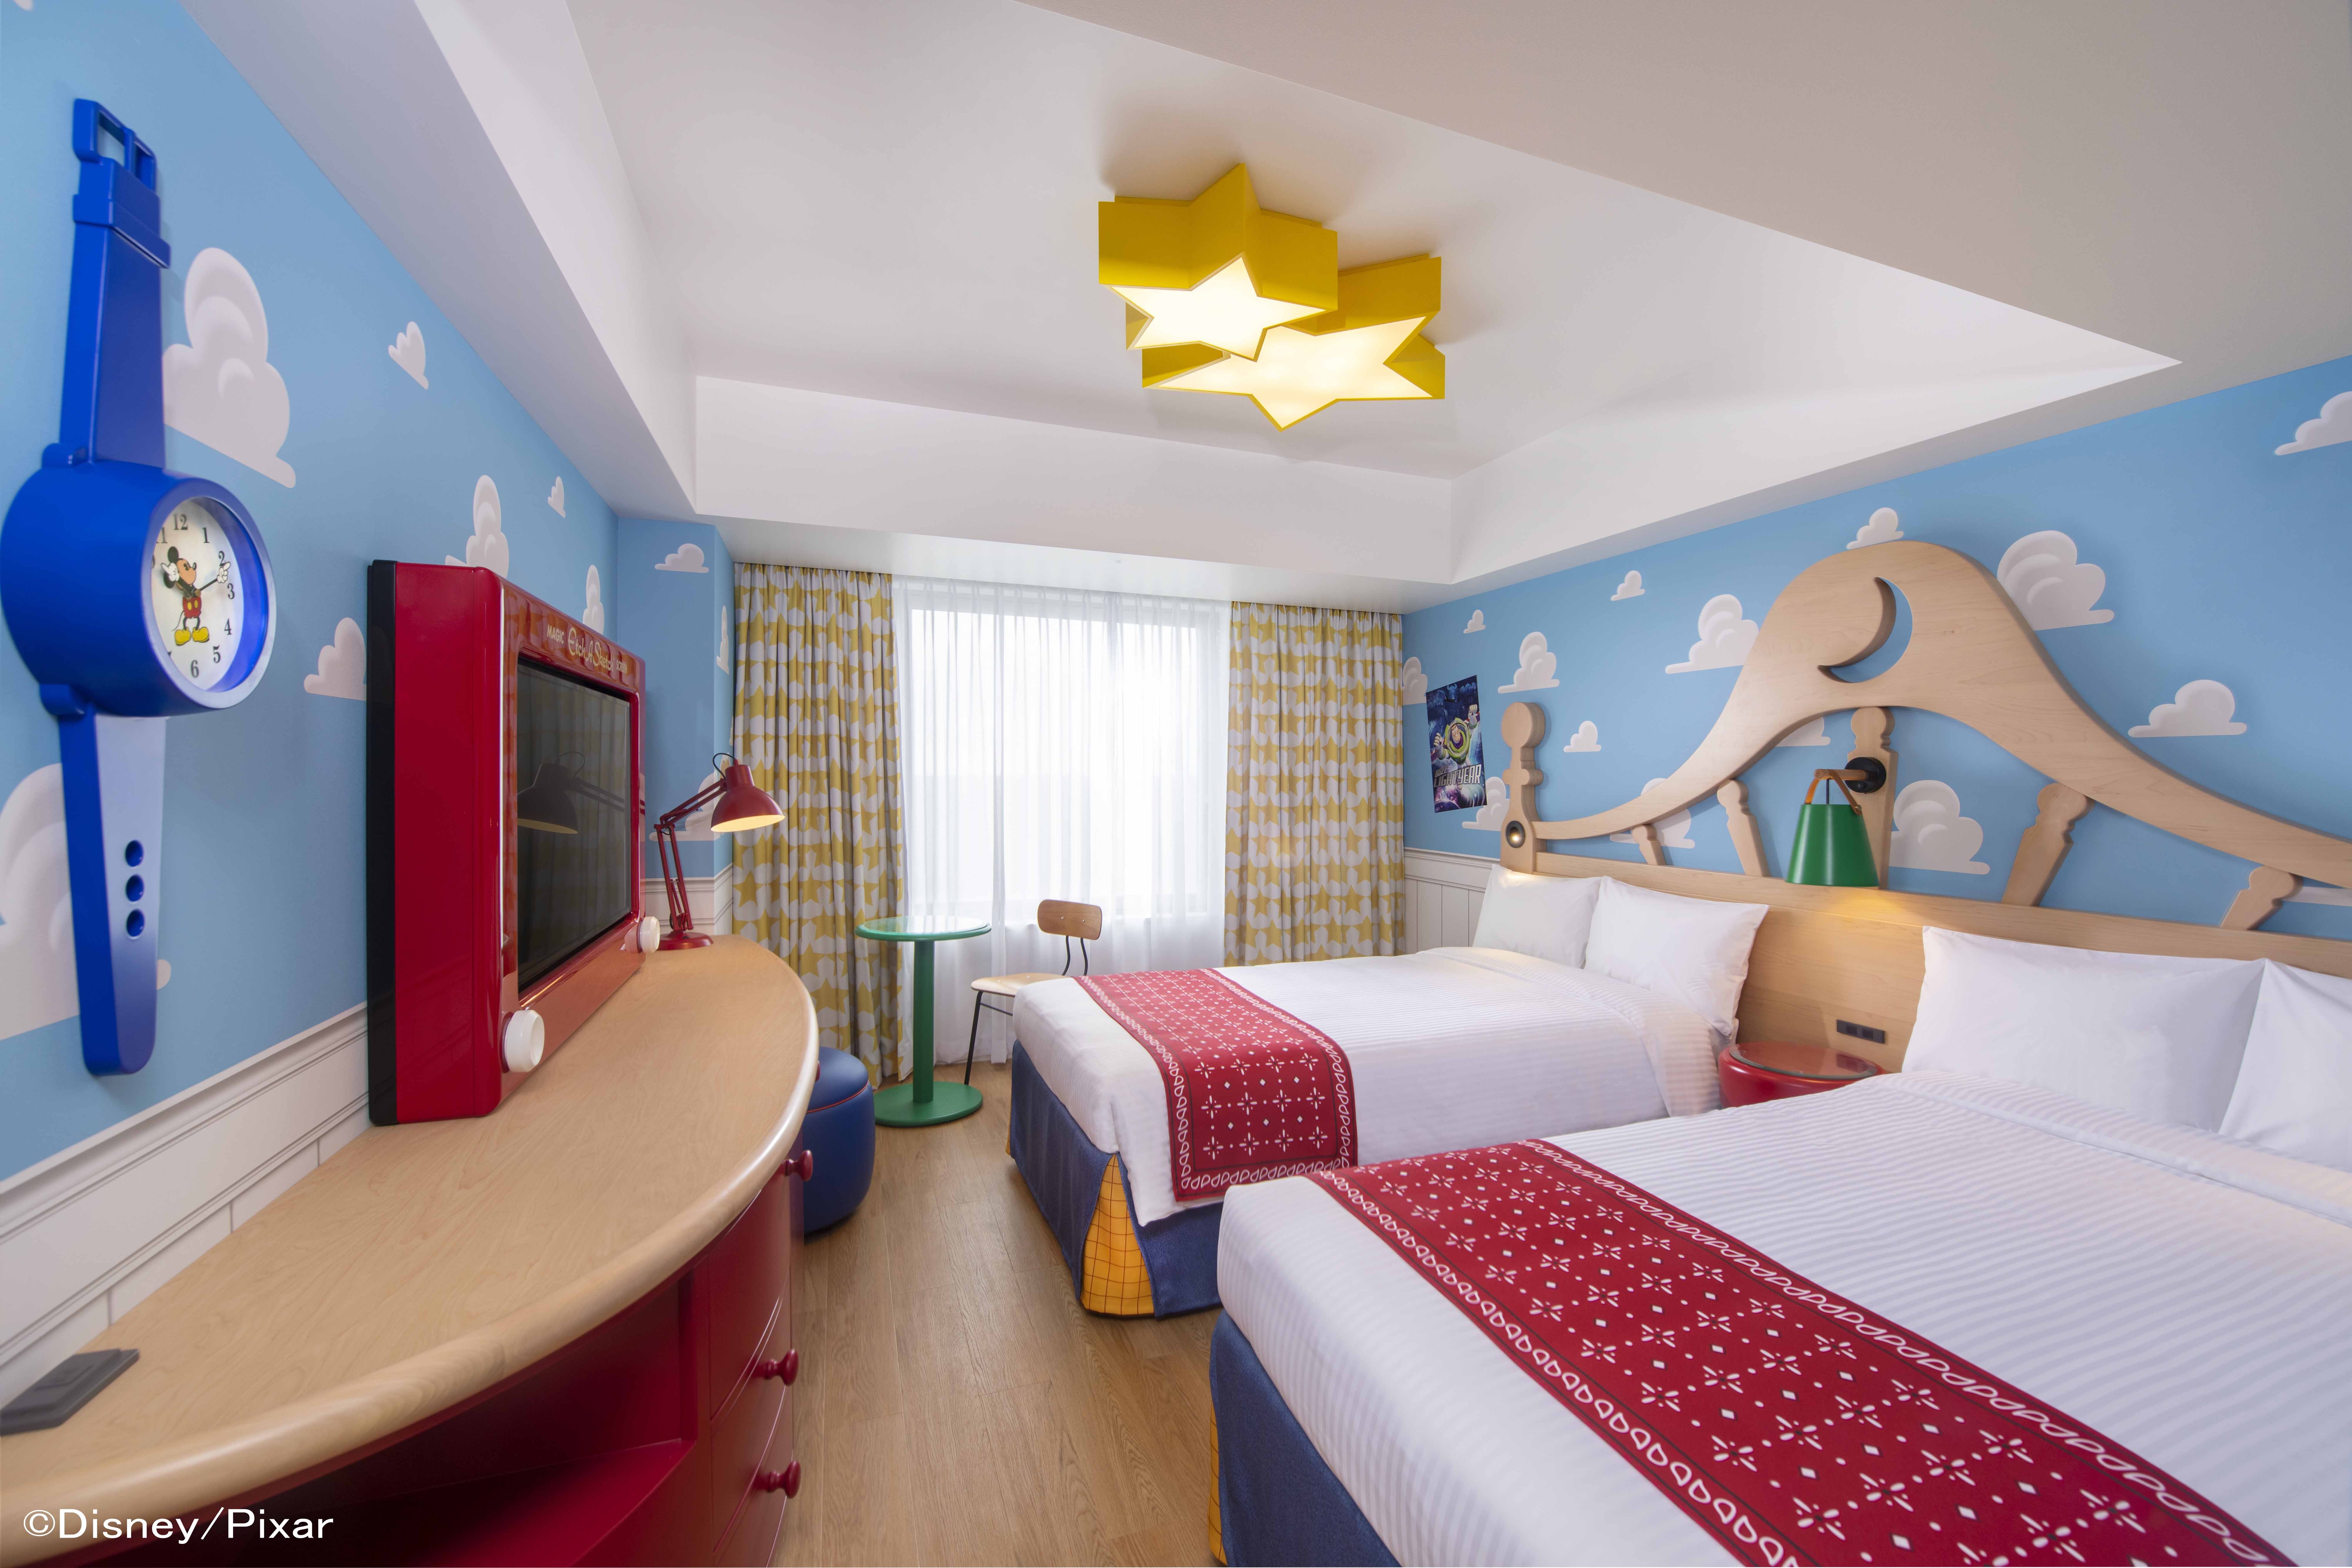 Toy Story迷必衝！東京迪士尼度假區「反斗奇兵飯店」確定2022年4月開幕